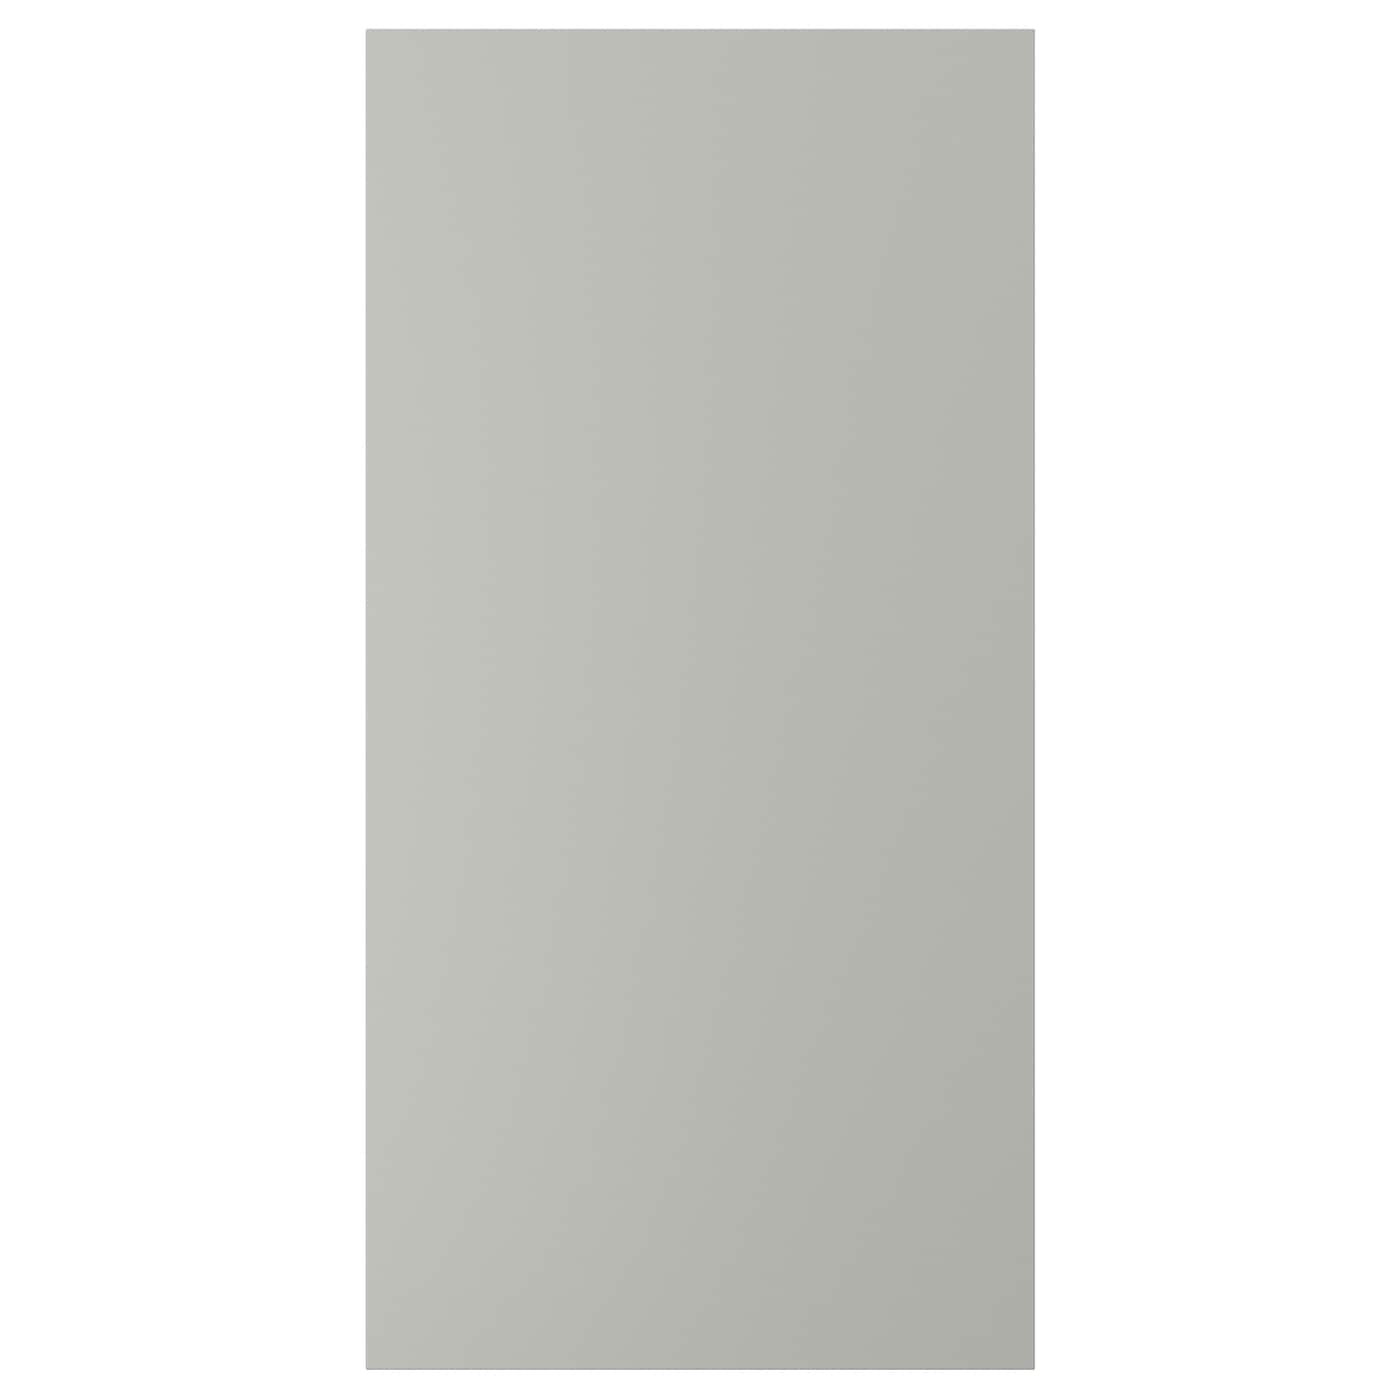 Дверца - IKEA HAVSTORP, 120х60 см, светло-серый, ХАВСТОРП ИКЕА